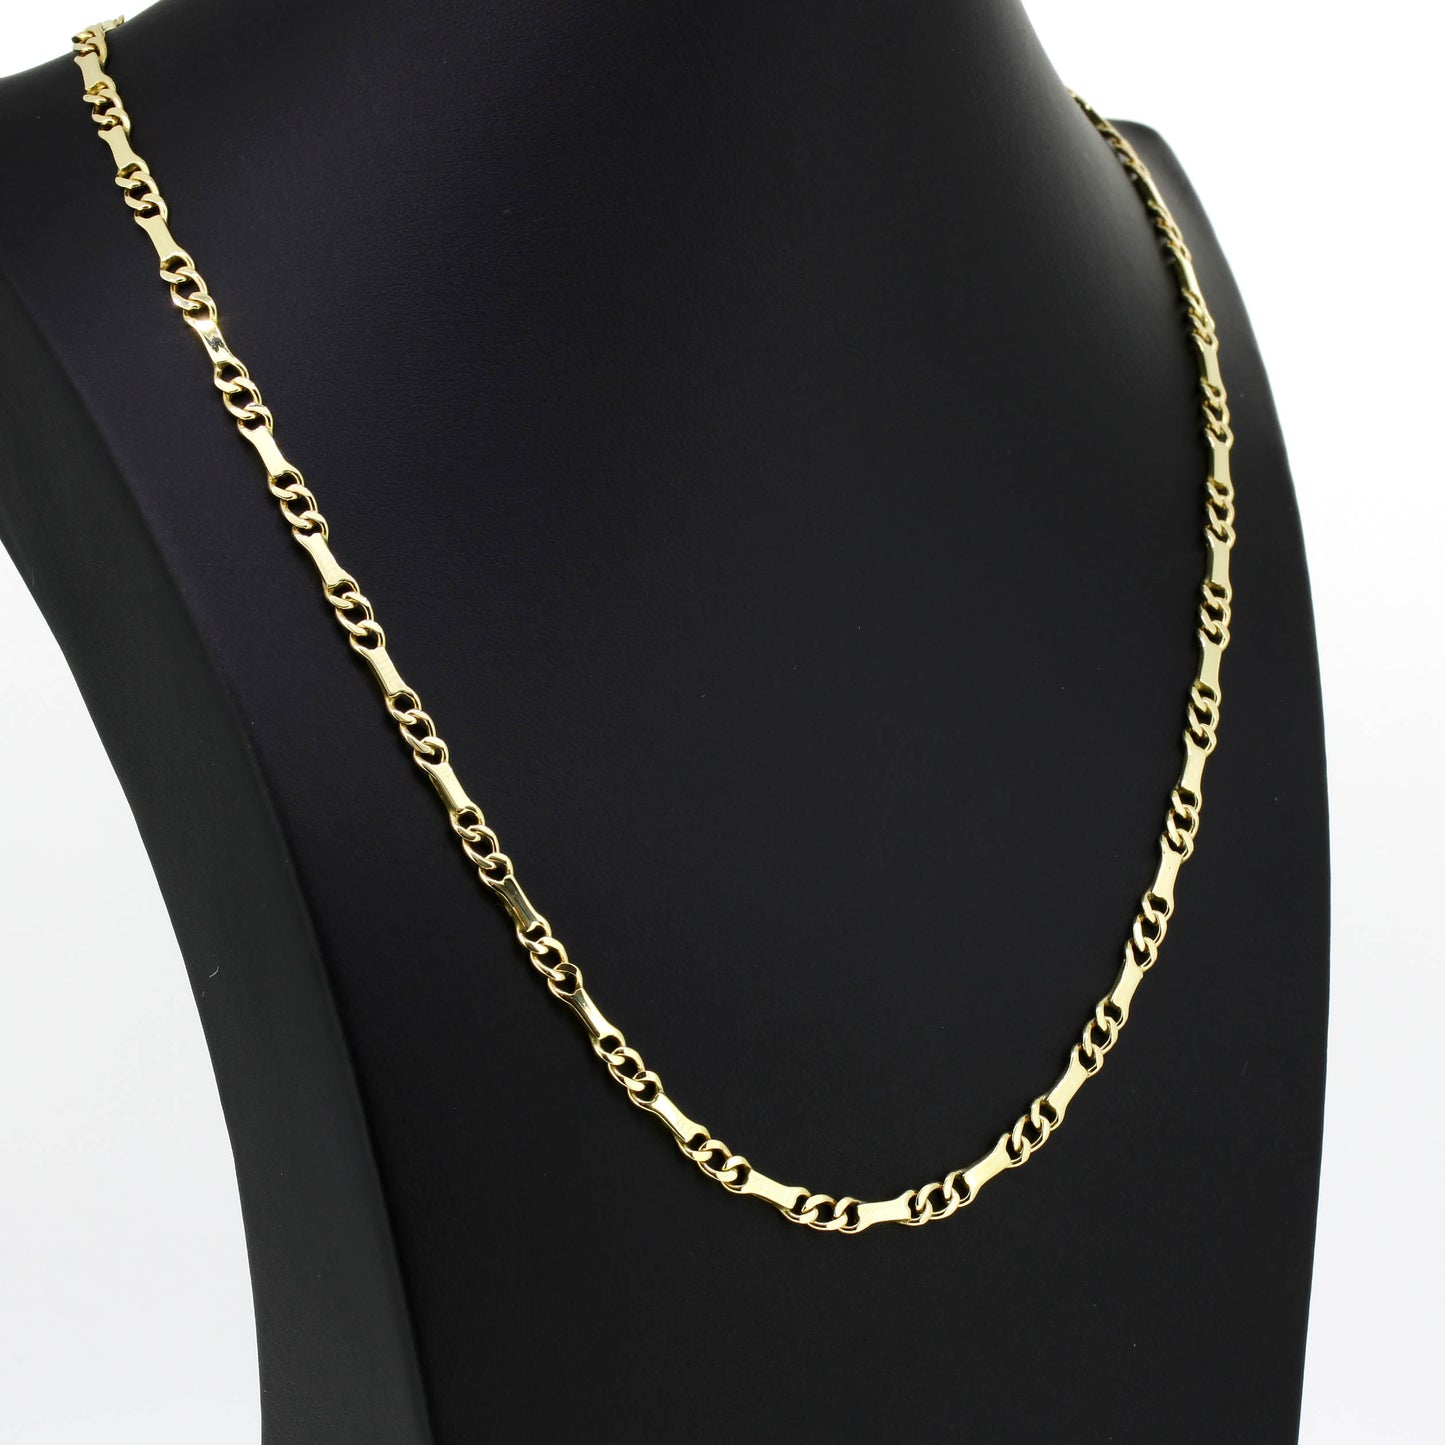 Platten Halskette 585 Gold 14 Kt Gelbgold - Kettenlänge 50 cm - Wert 2100,-